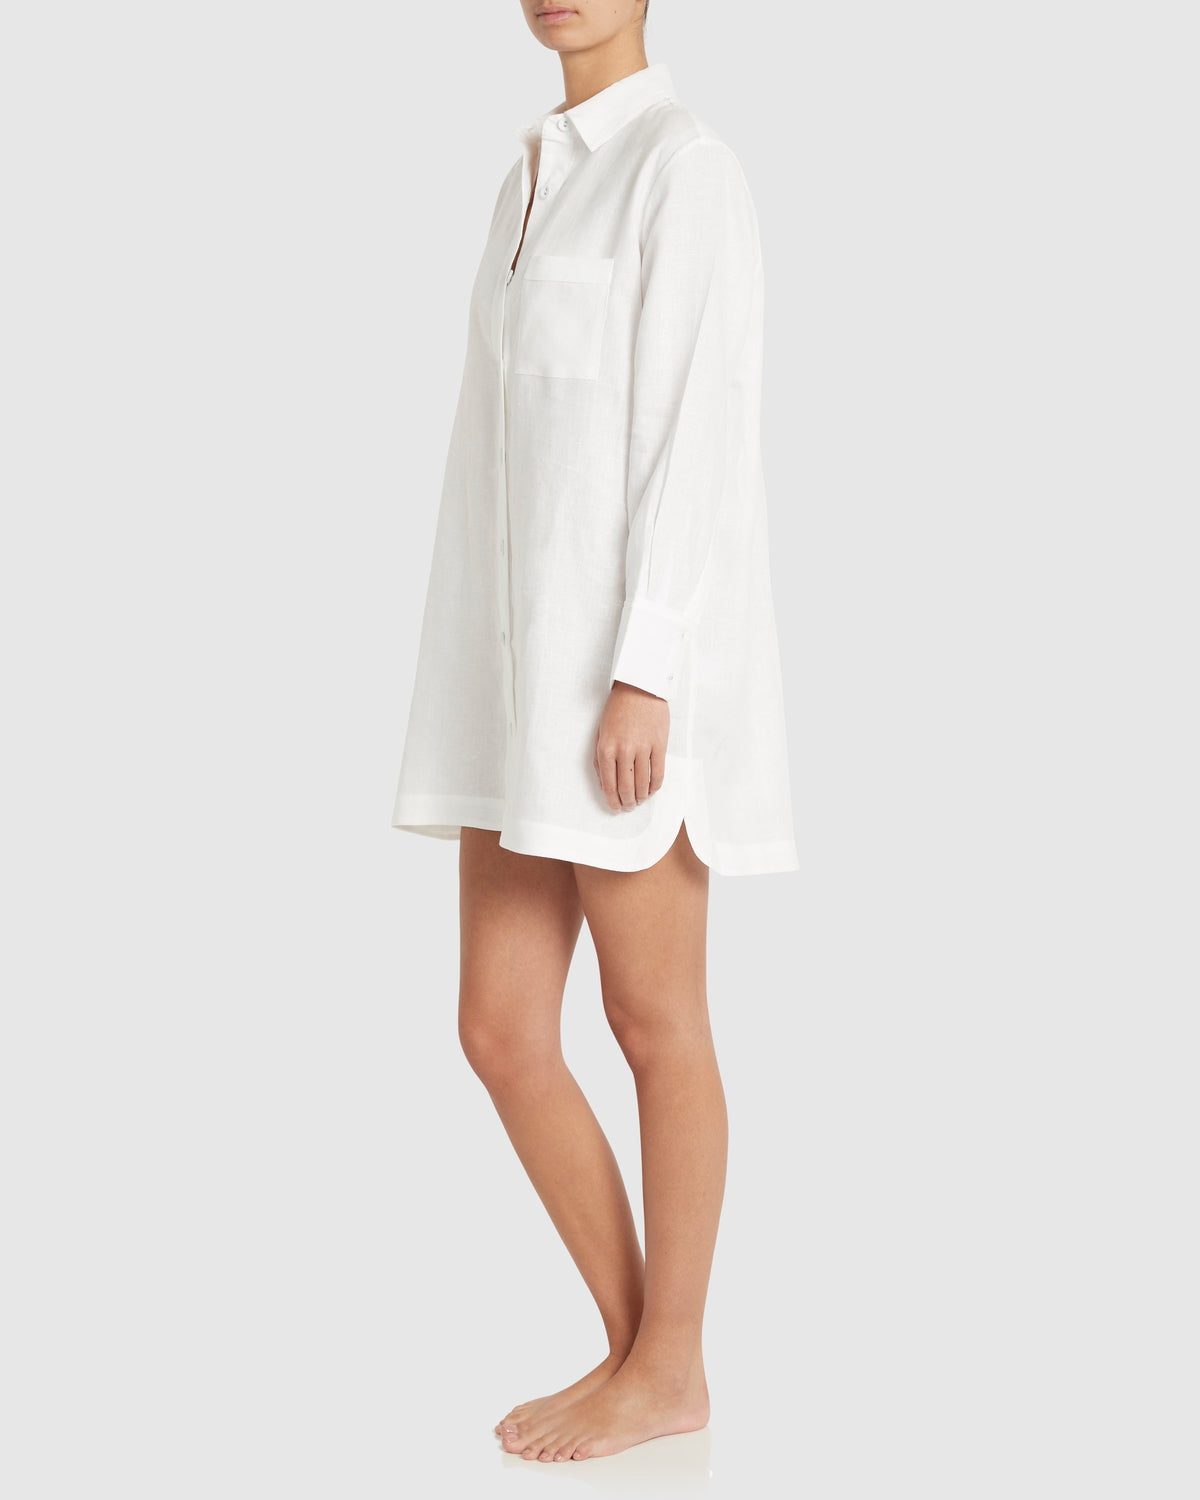 Remi Linen Sleep Shirt White – Jasmine and Will